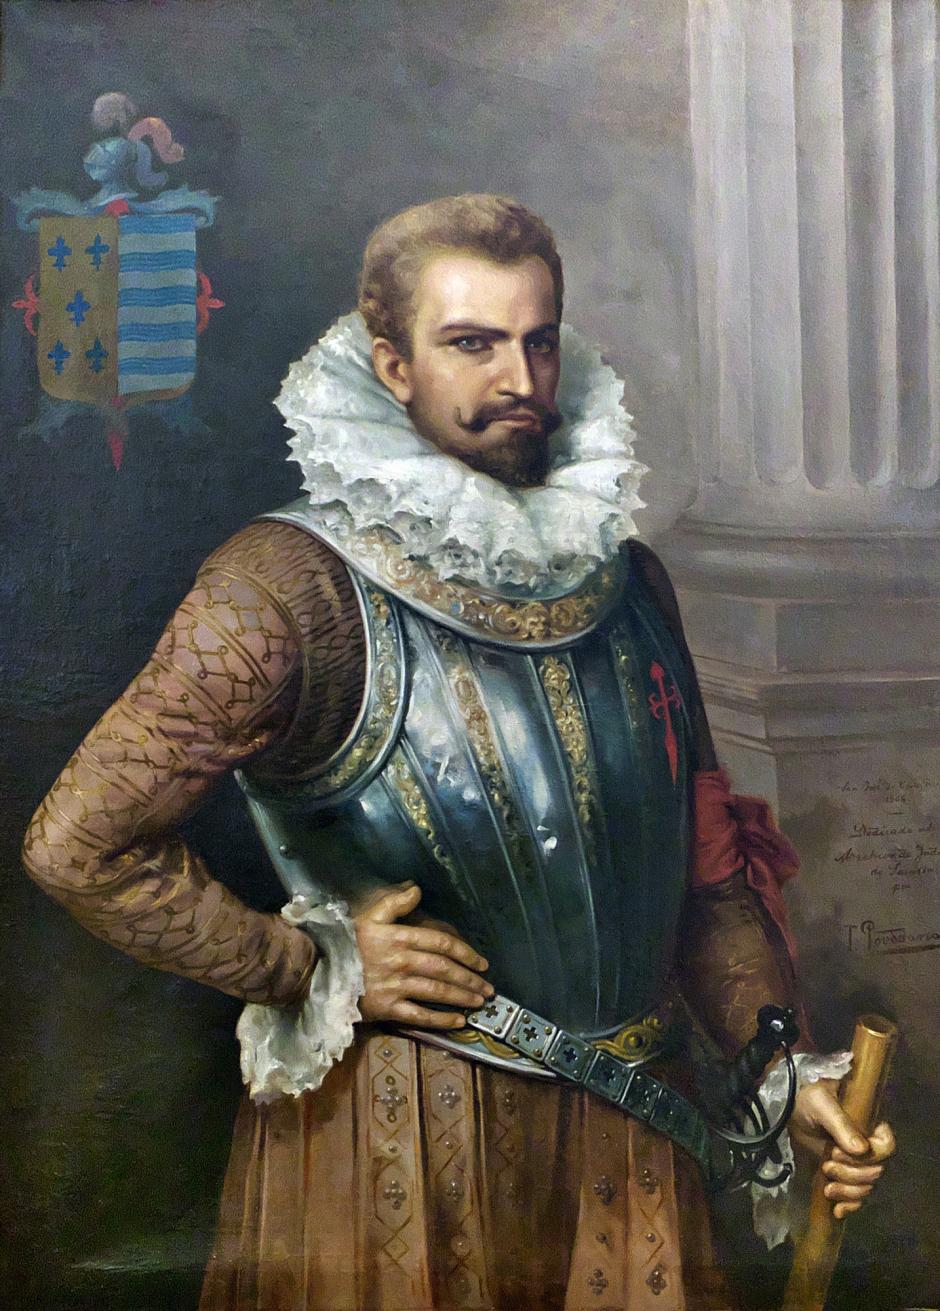 Retrato del adelantado Pedro de Alvarado encontrado en el Archivo General de Indias, pintado por Tomás Povedano (siglo XX)